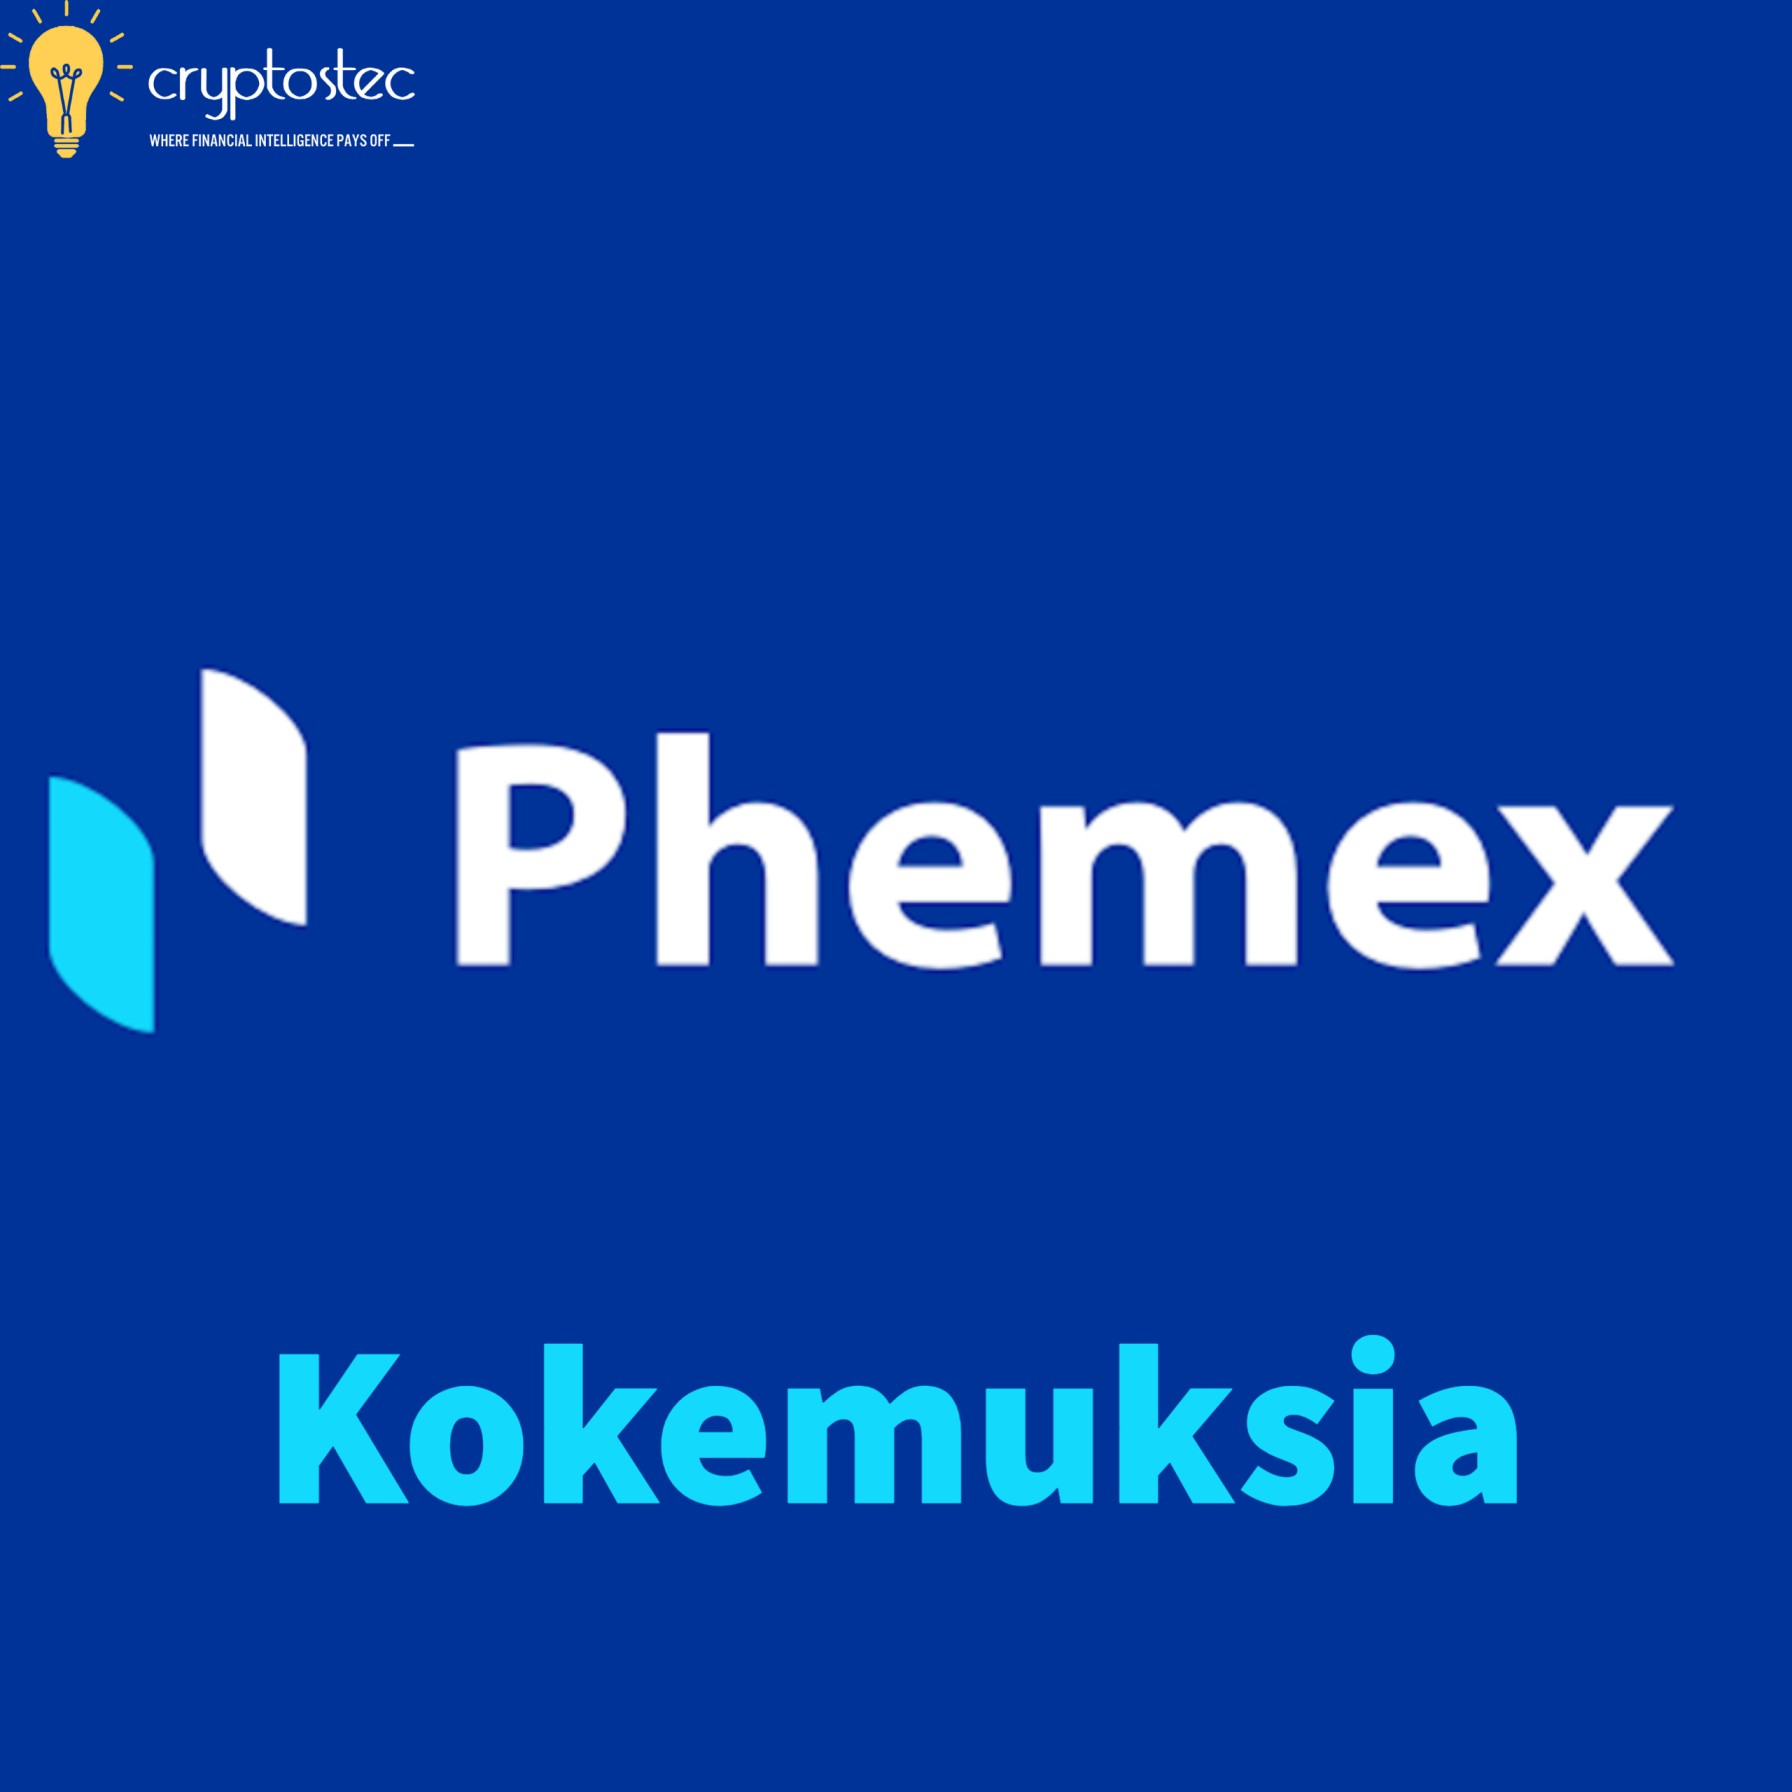 Phemex kokemuksia - Krypto Exchange| Krypto Futures Trading